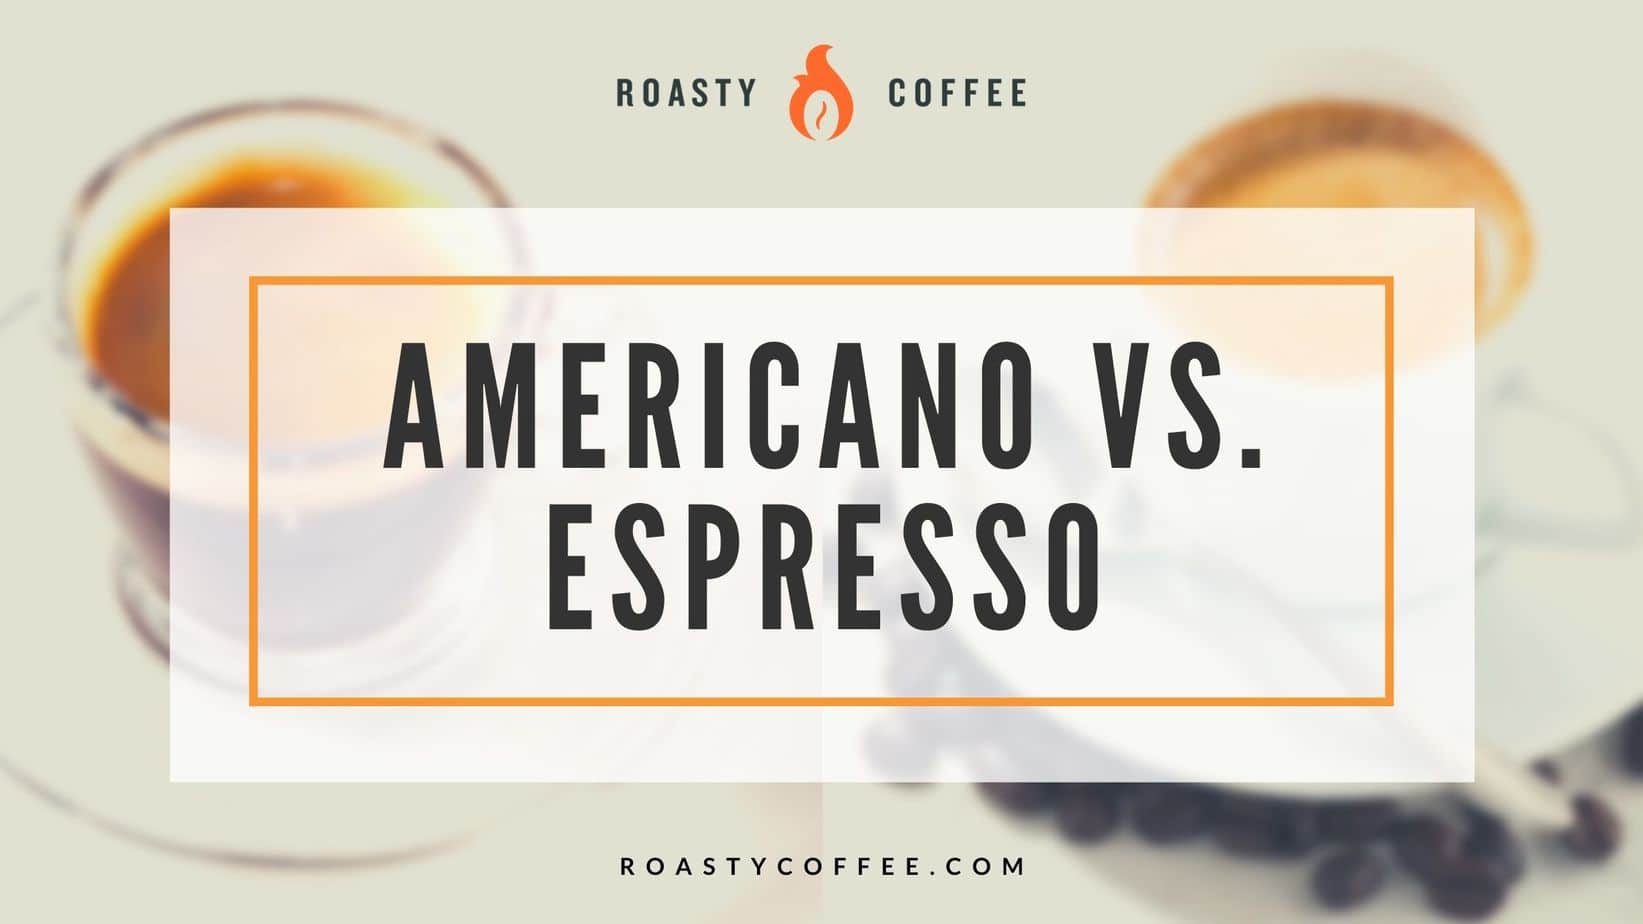 Americano versus Espresso: sepa lo que está pidiendo